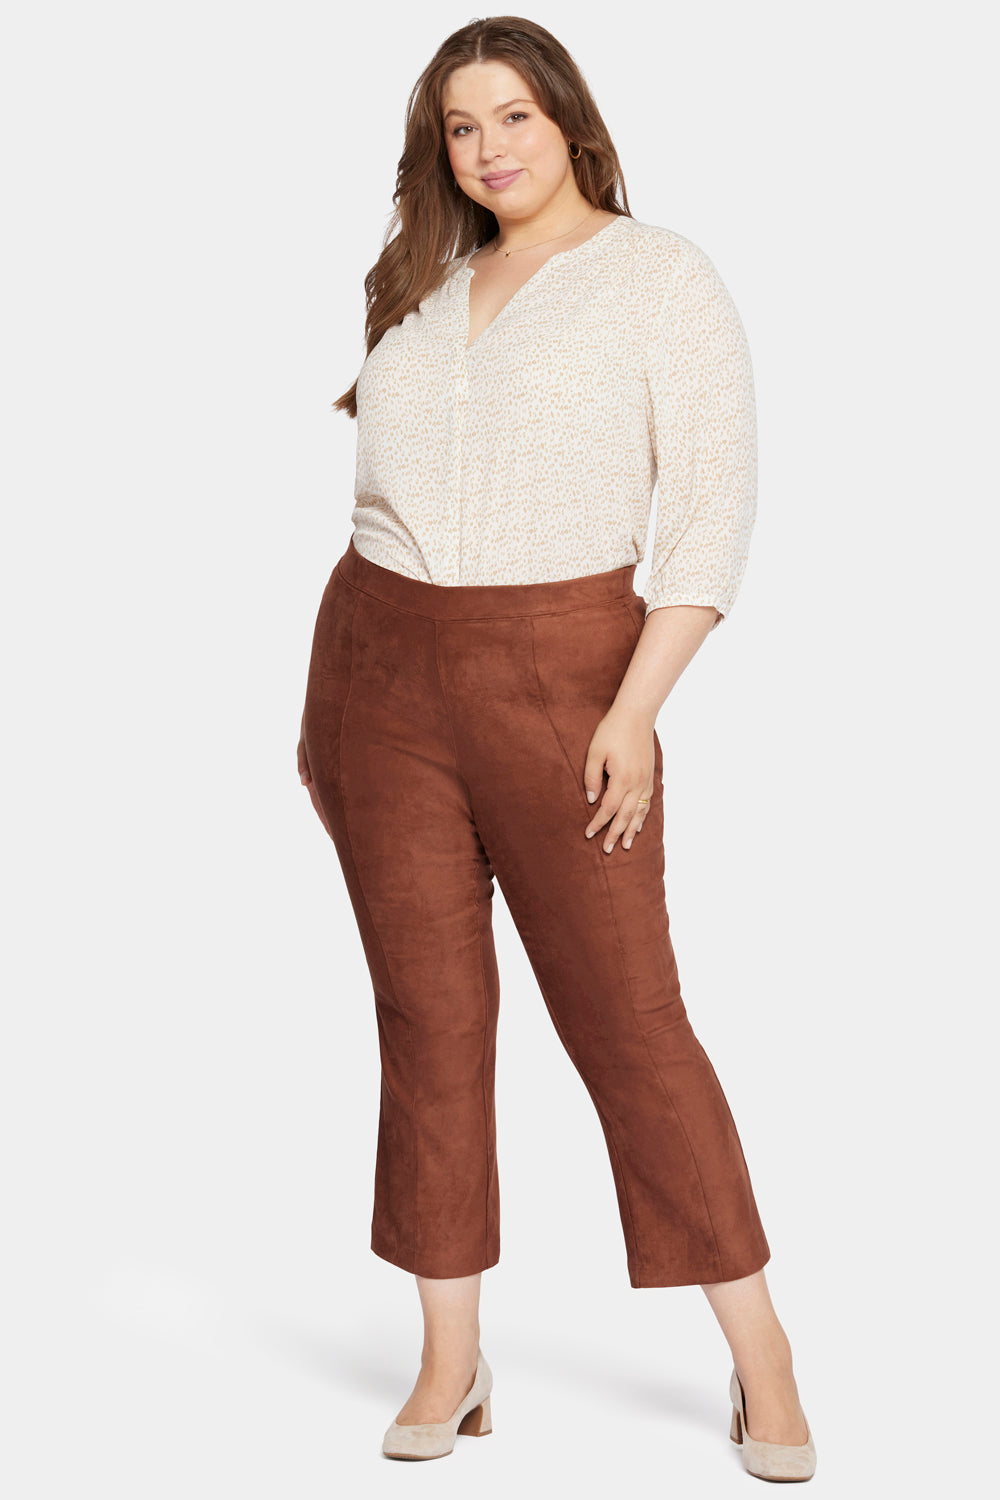 Deep Brown Solid Women Plus Size Slim Pants